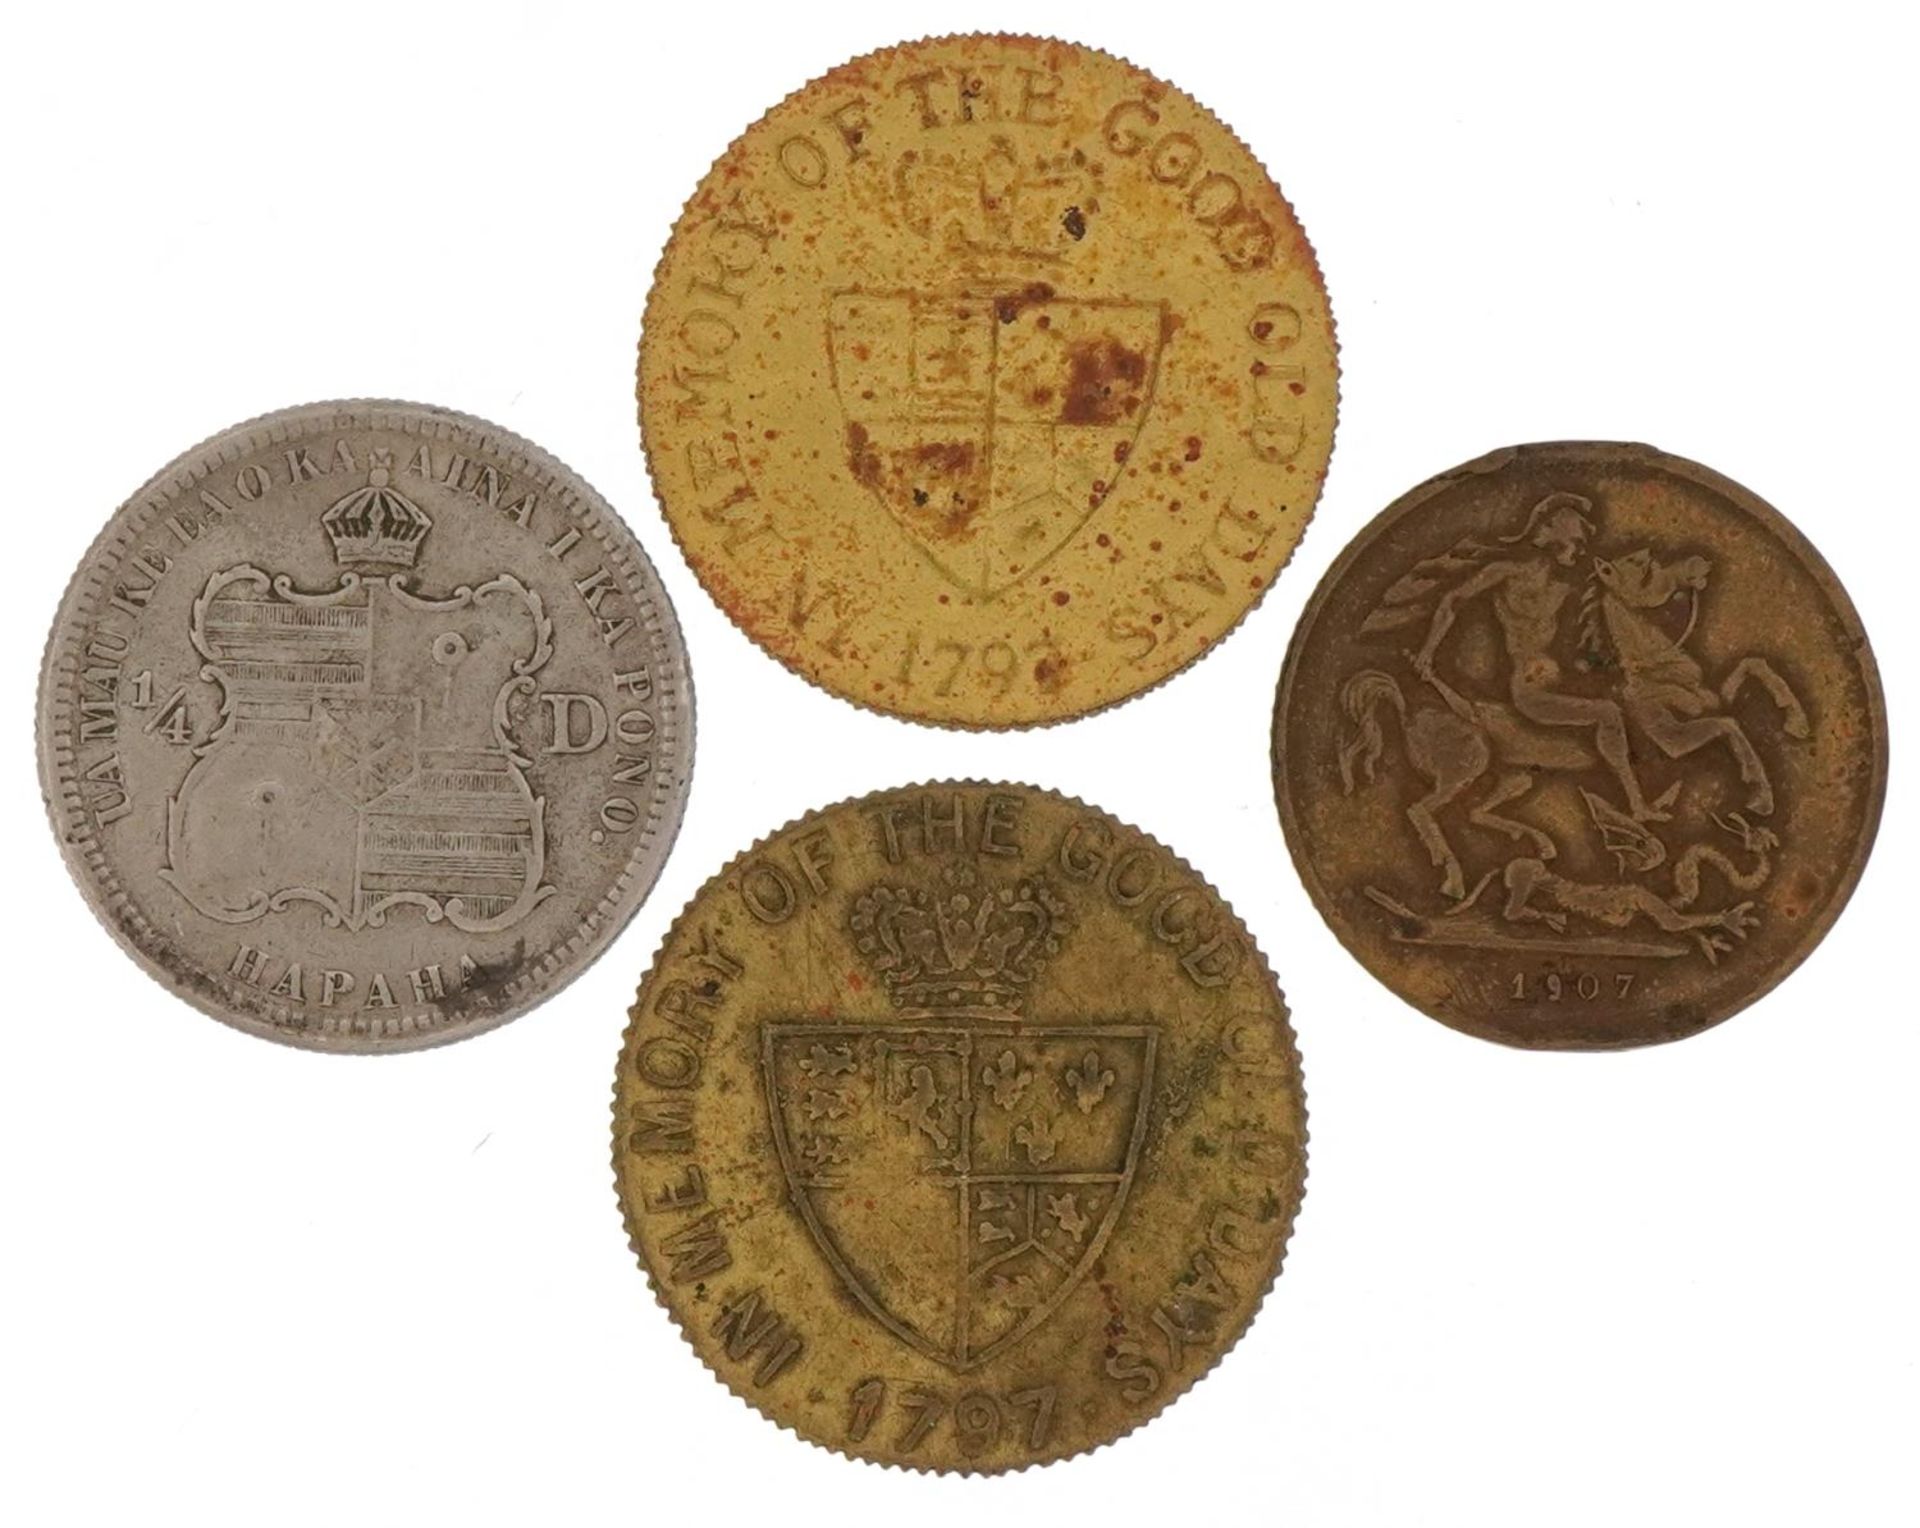 Calakaua King of Hawaii 1883 quarter dollar, George III metal tokens and Edward VII token - Image 2 of 2